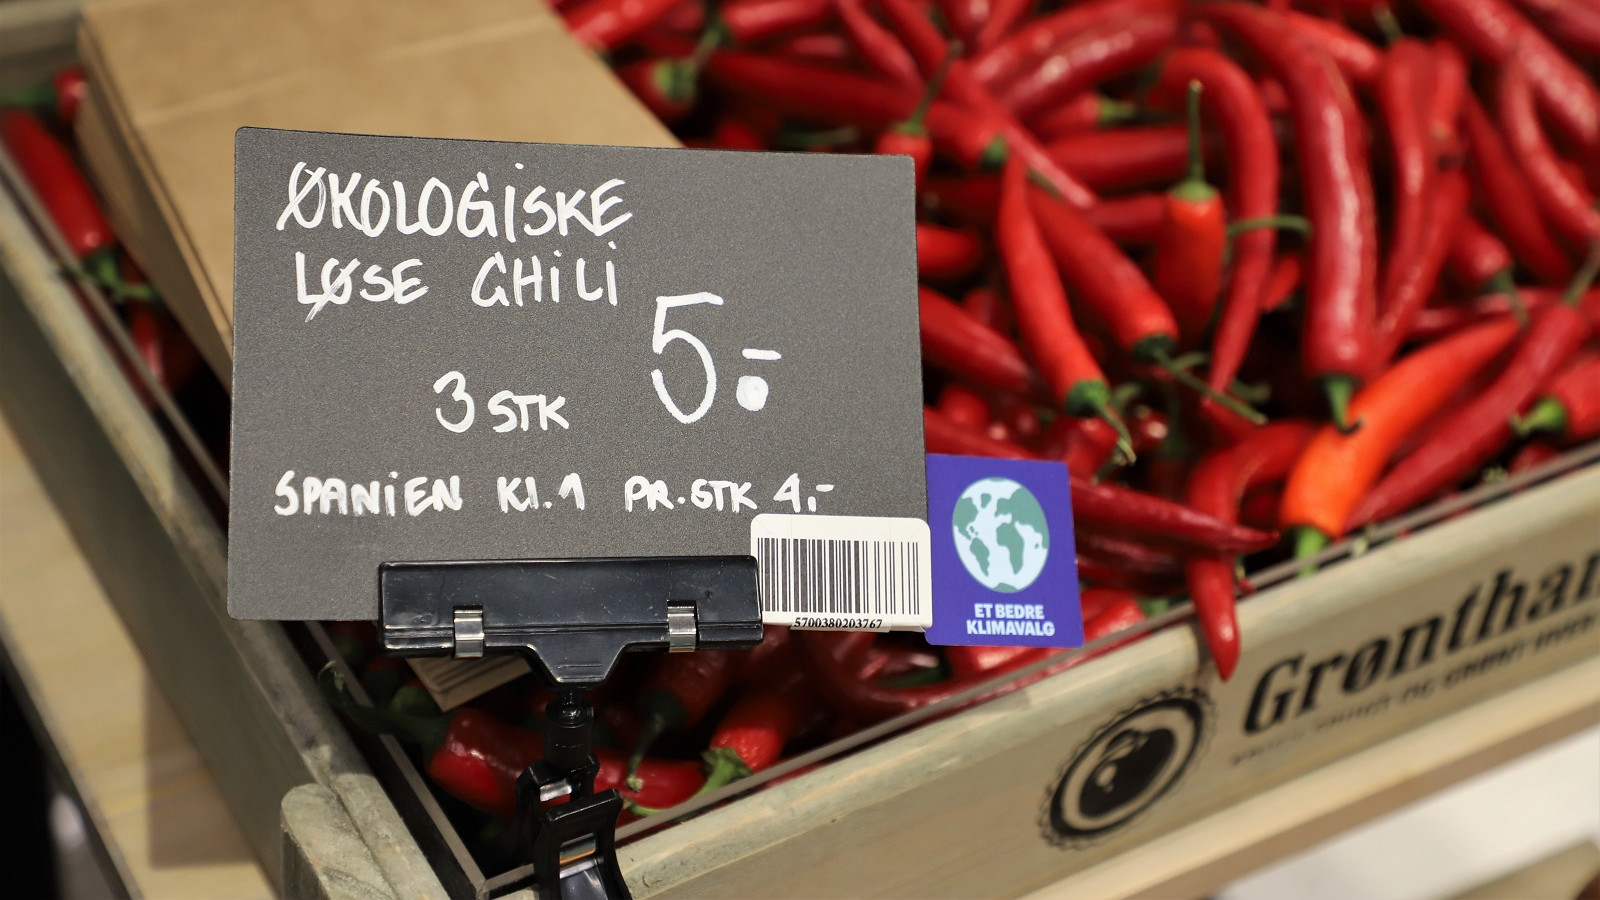 Kvicklys klimamærke skelner ikke mellem om produkterne er importerede eller dyrket i opvarmede væksthuse i Danmark